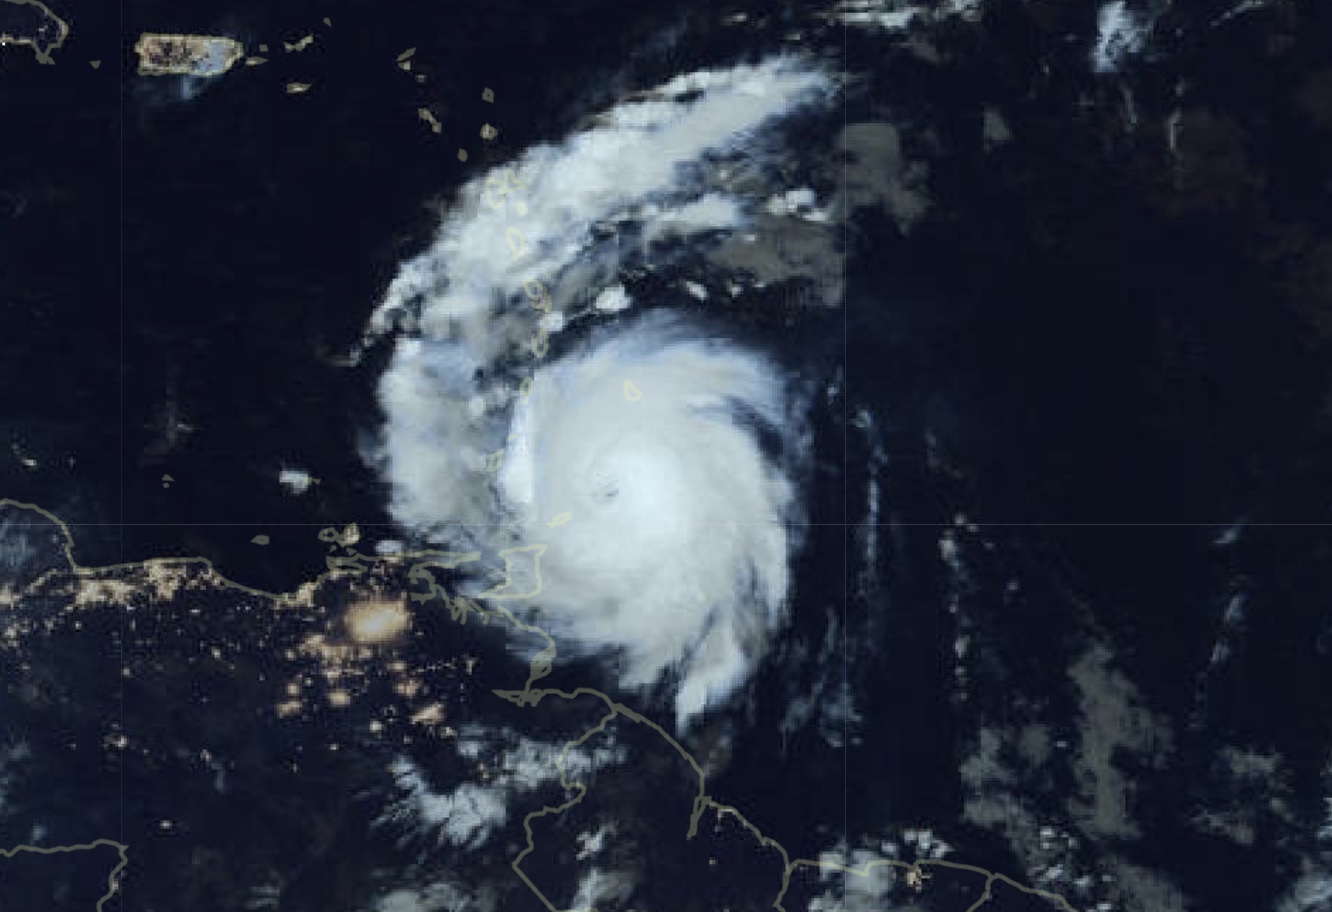     Rétrogradé en catégorie 3, l’ouragan Béryl crée des conditions dégradées en Martinique

